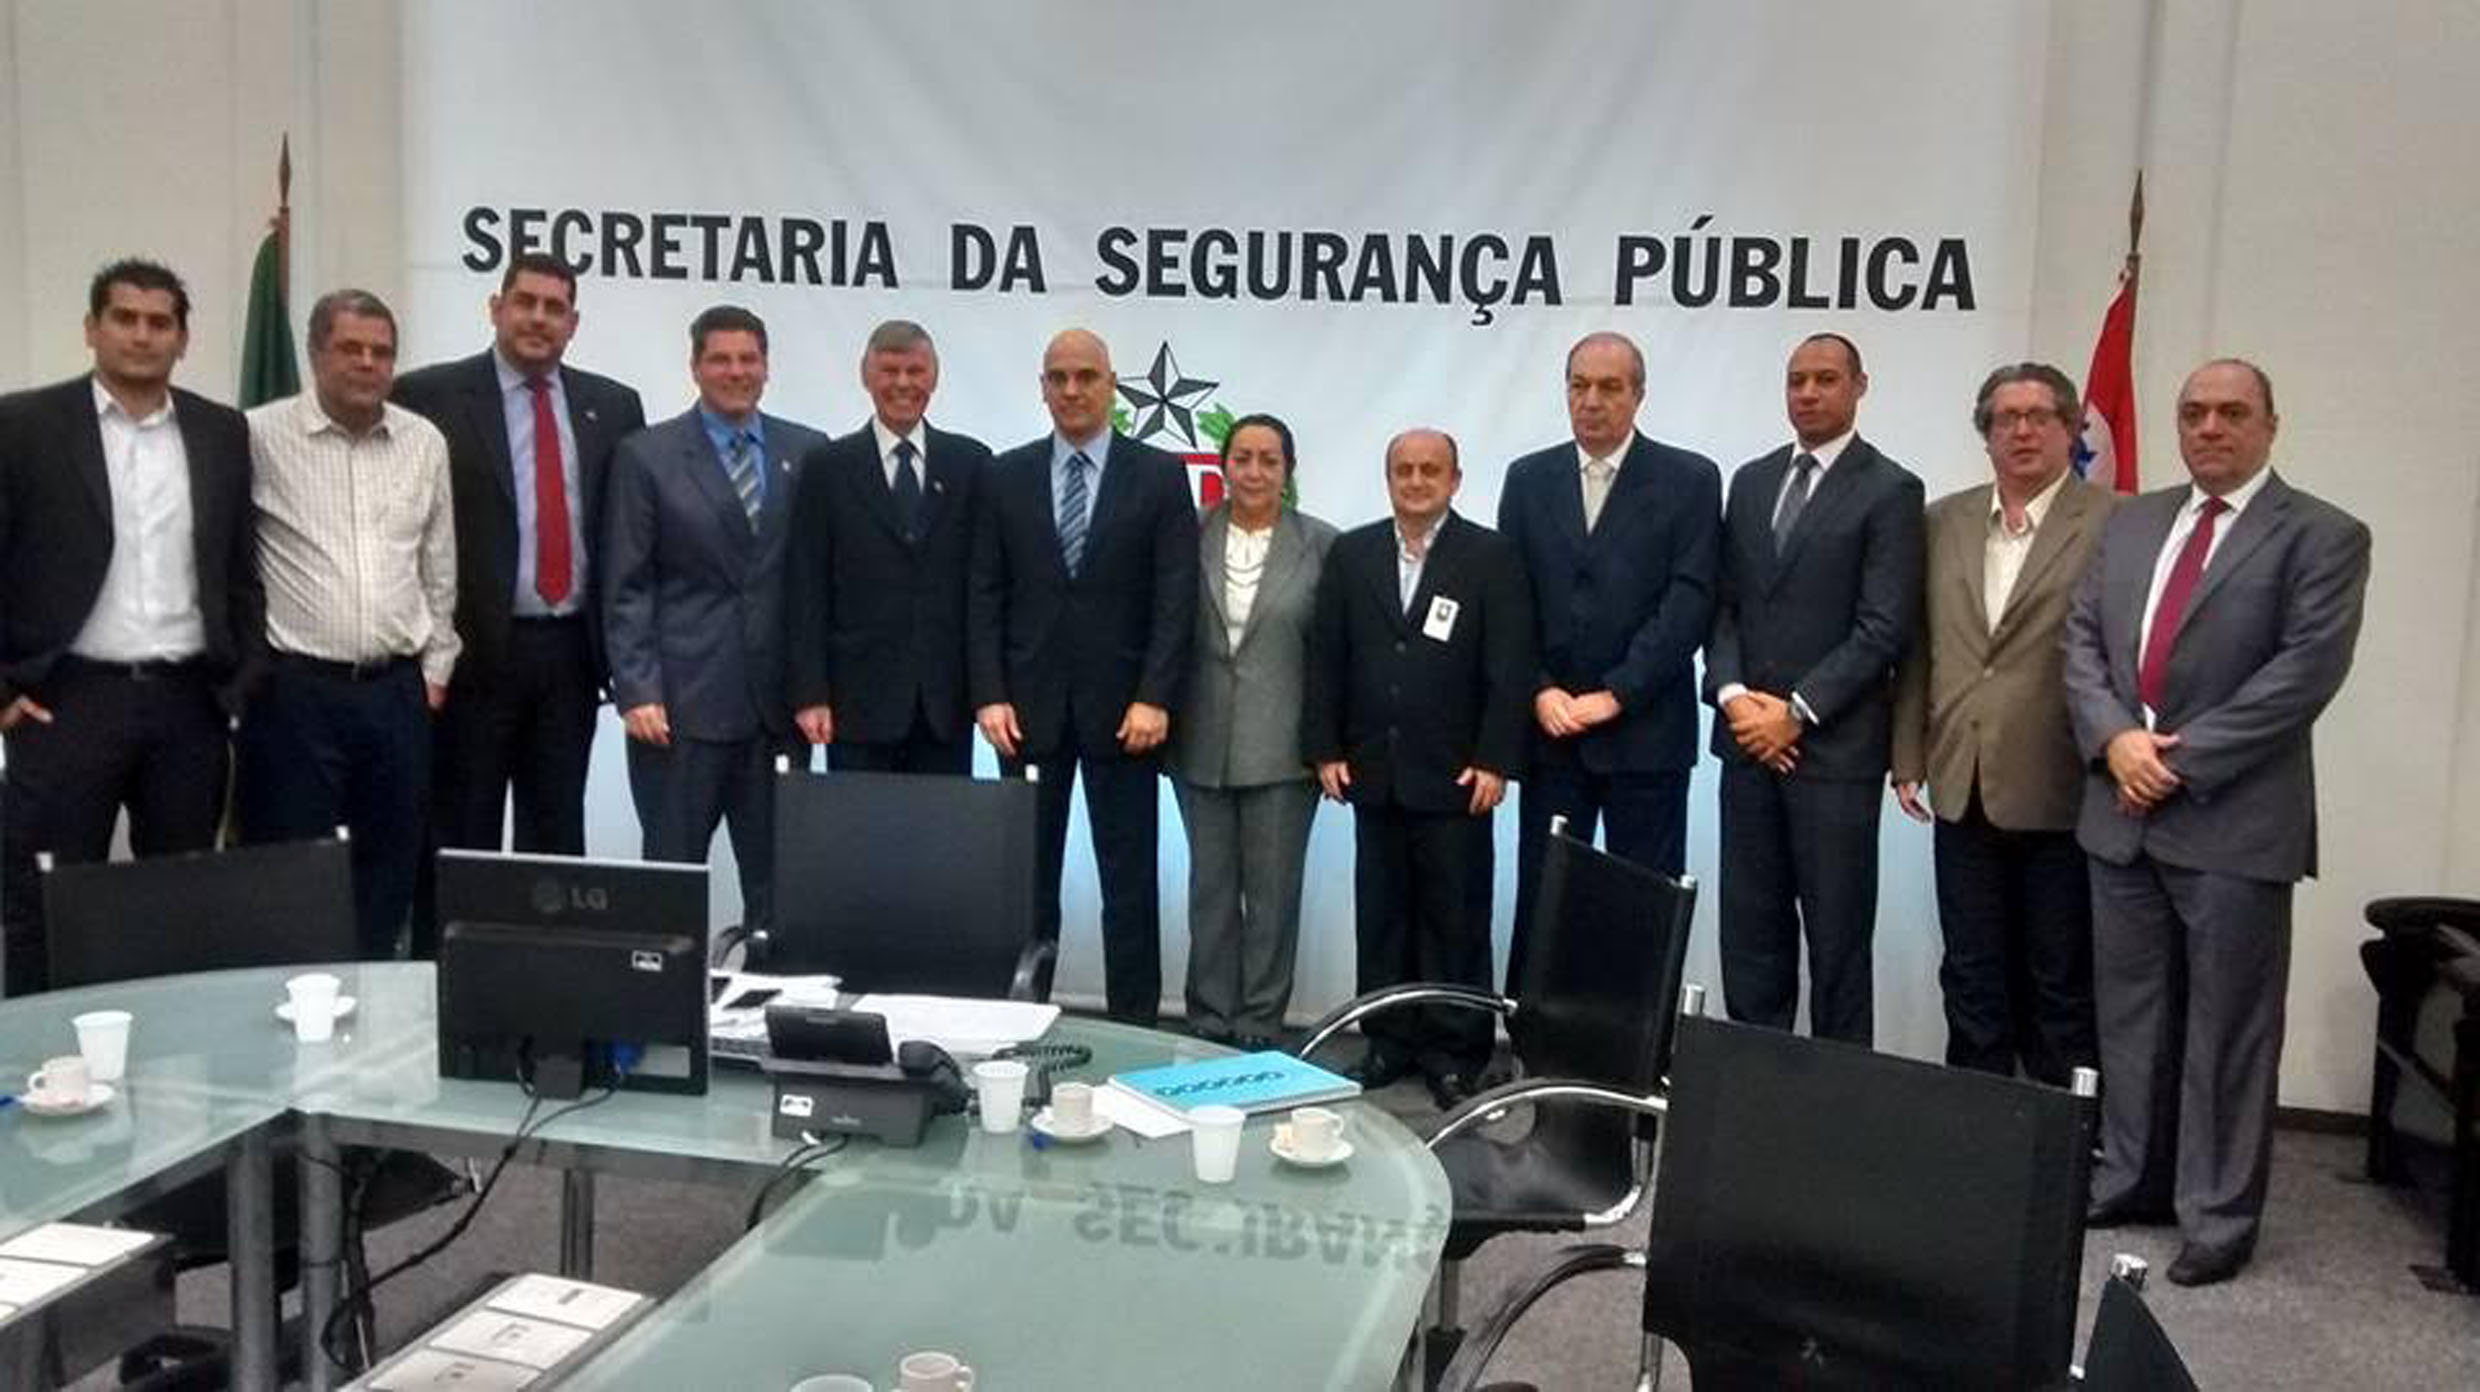 Comitiva de Ribeiro Preto visitou Secretaria da Segurana Pblica<a style='float:right;color:#ccc' href='https://www3.al.sp.gov.br/repositorio/noticia/N-09-2015/fg175800.jpg' target=_blank><i class='bi bi-zoom-in'></i> Clique para ver a imagem </a>